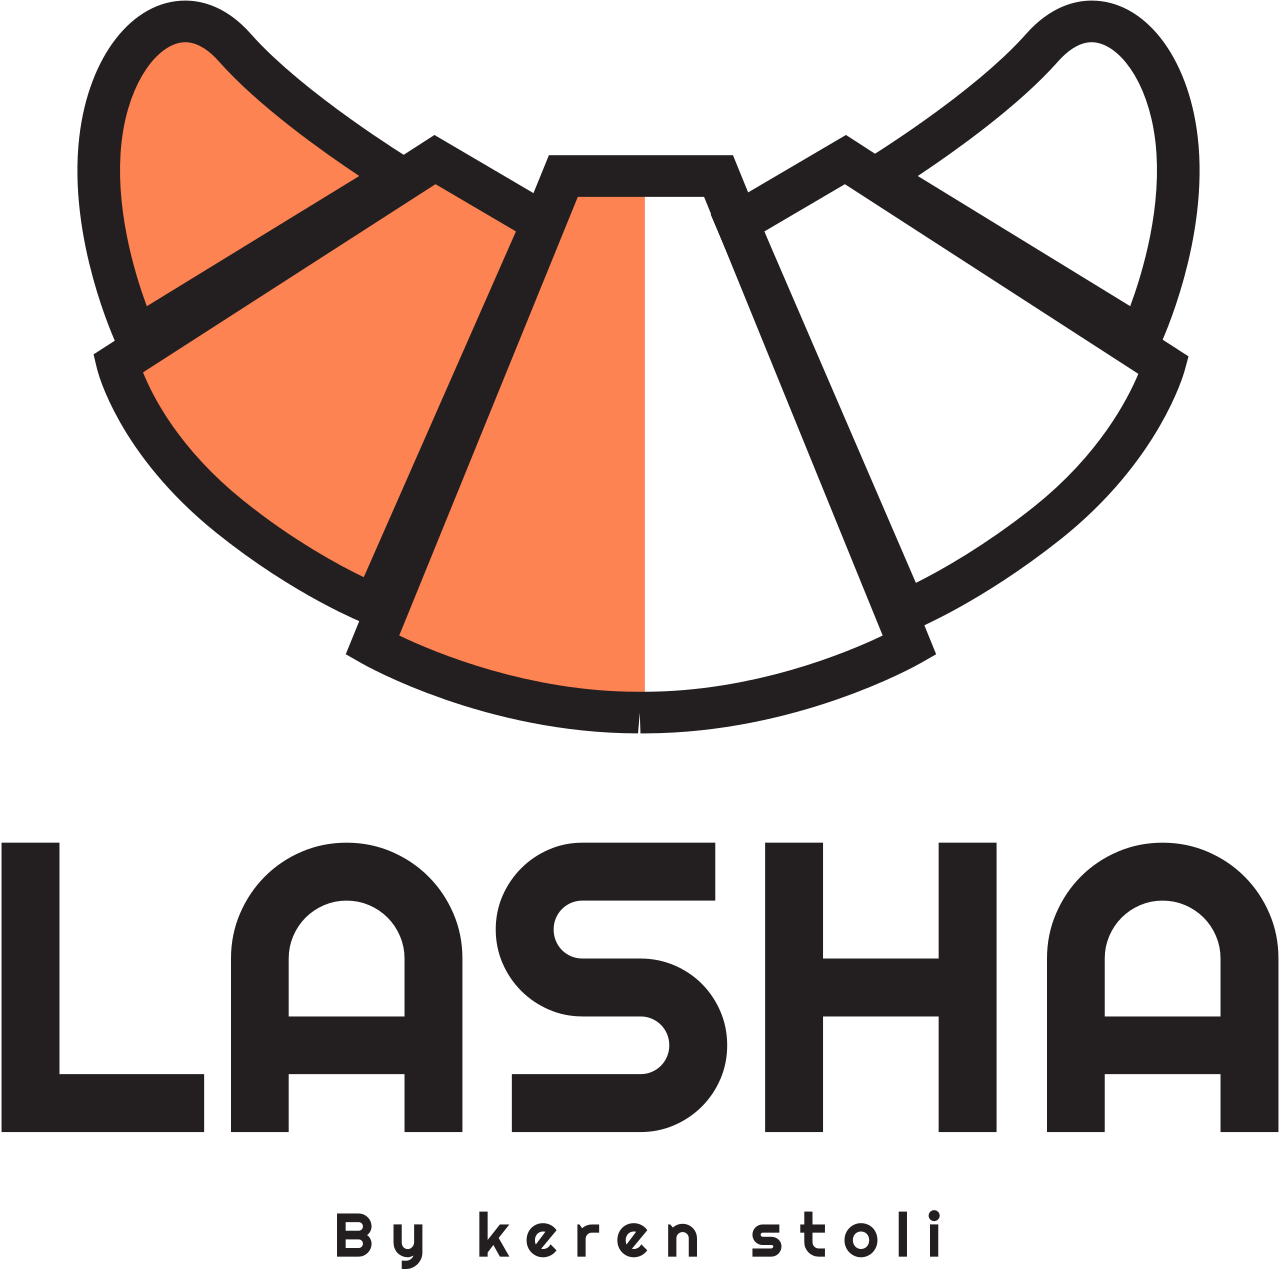 LASHA's web page